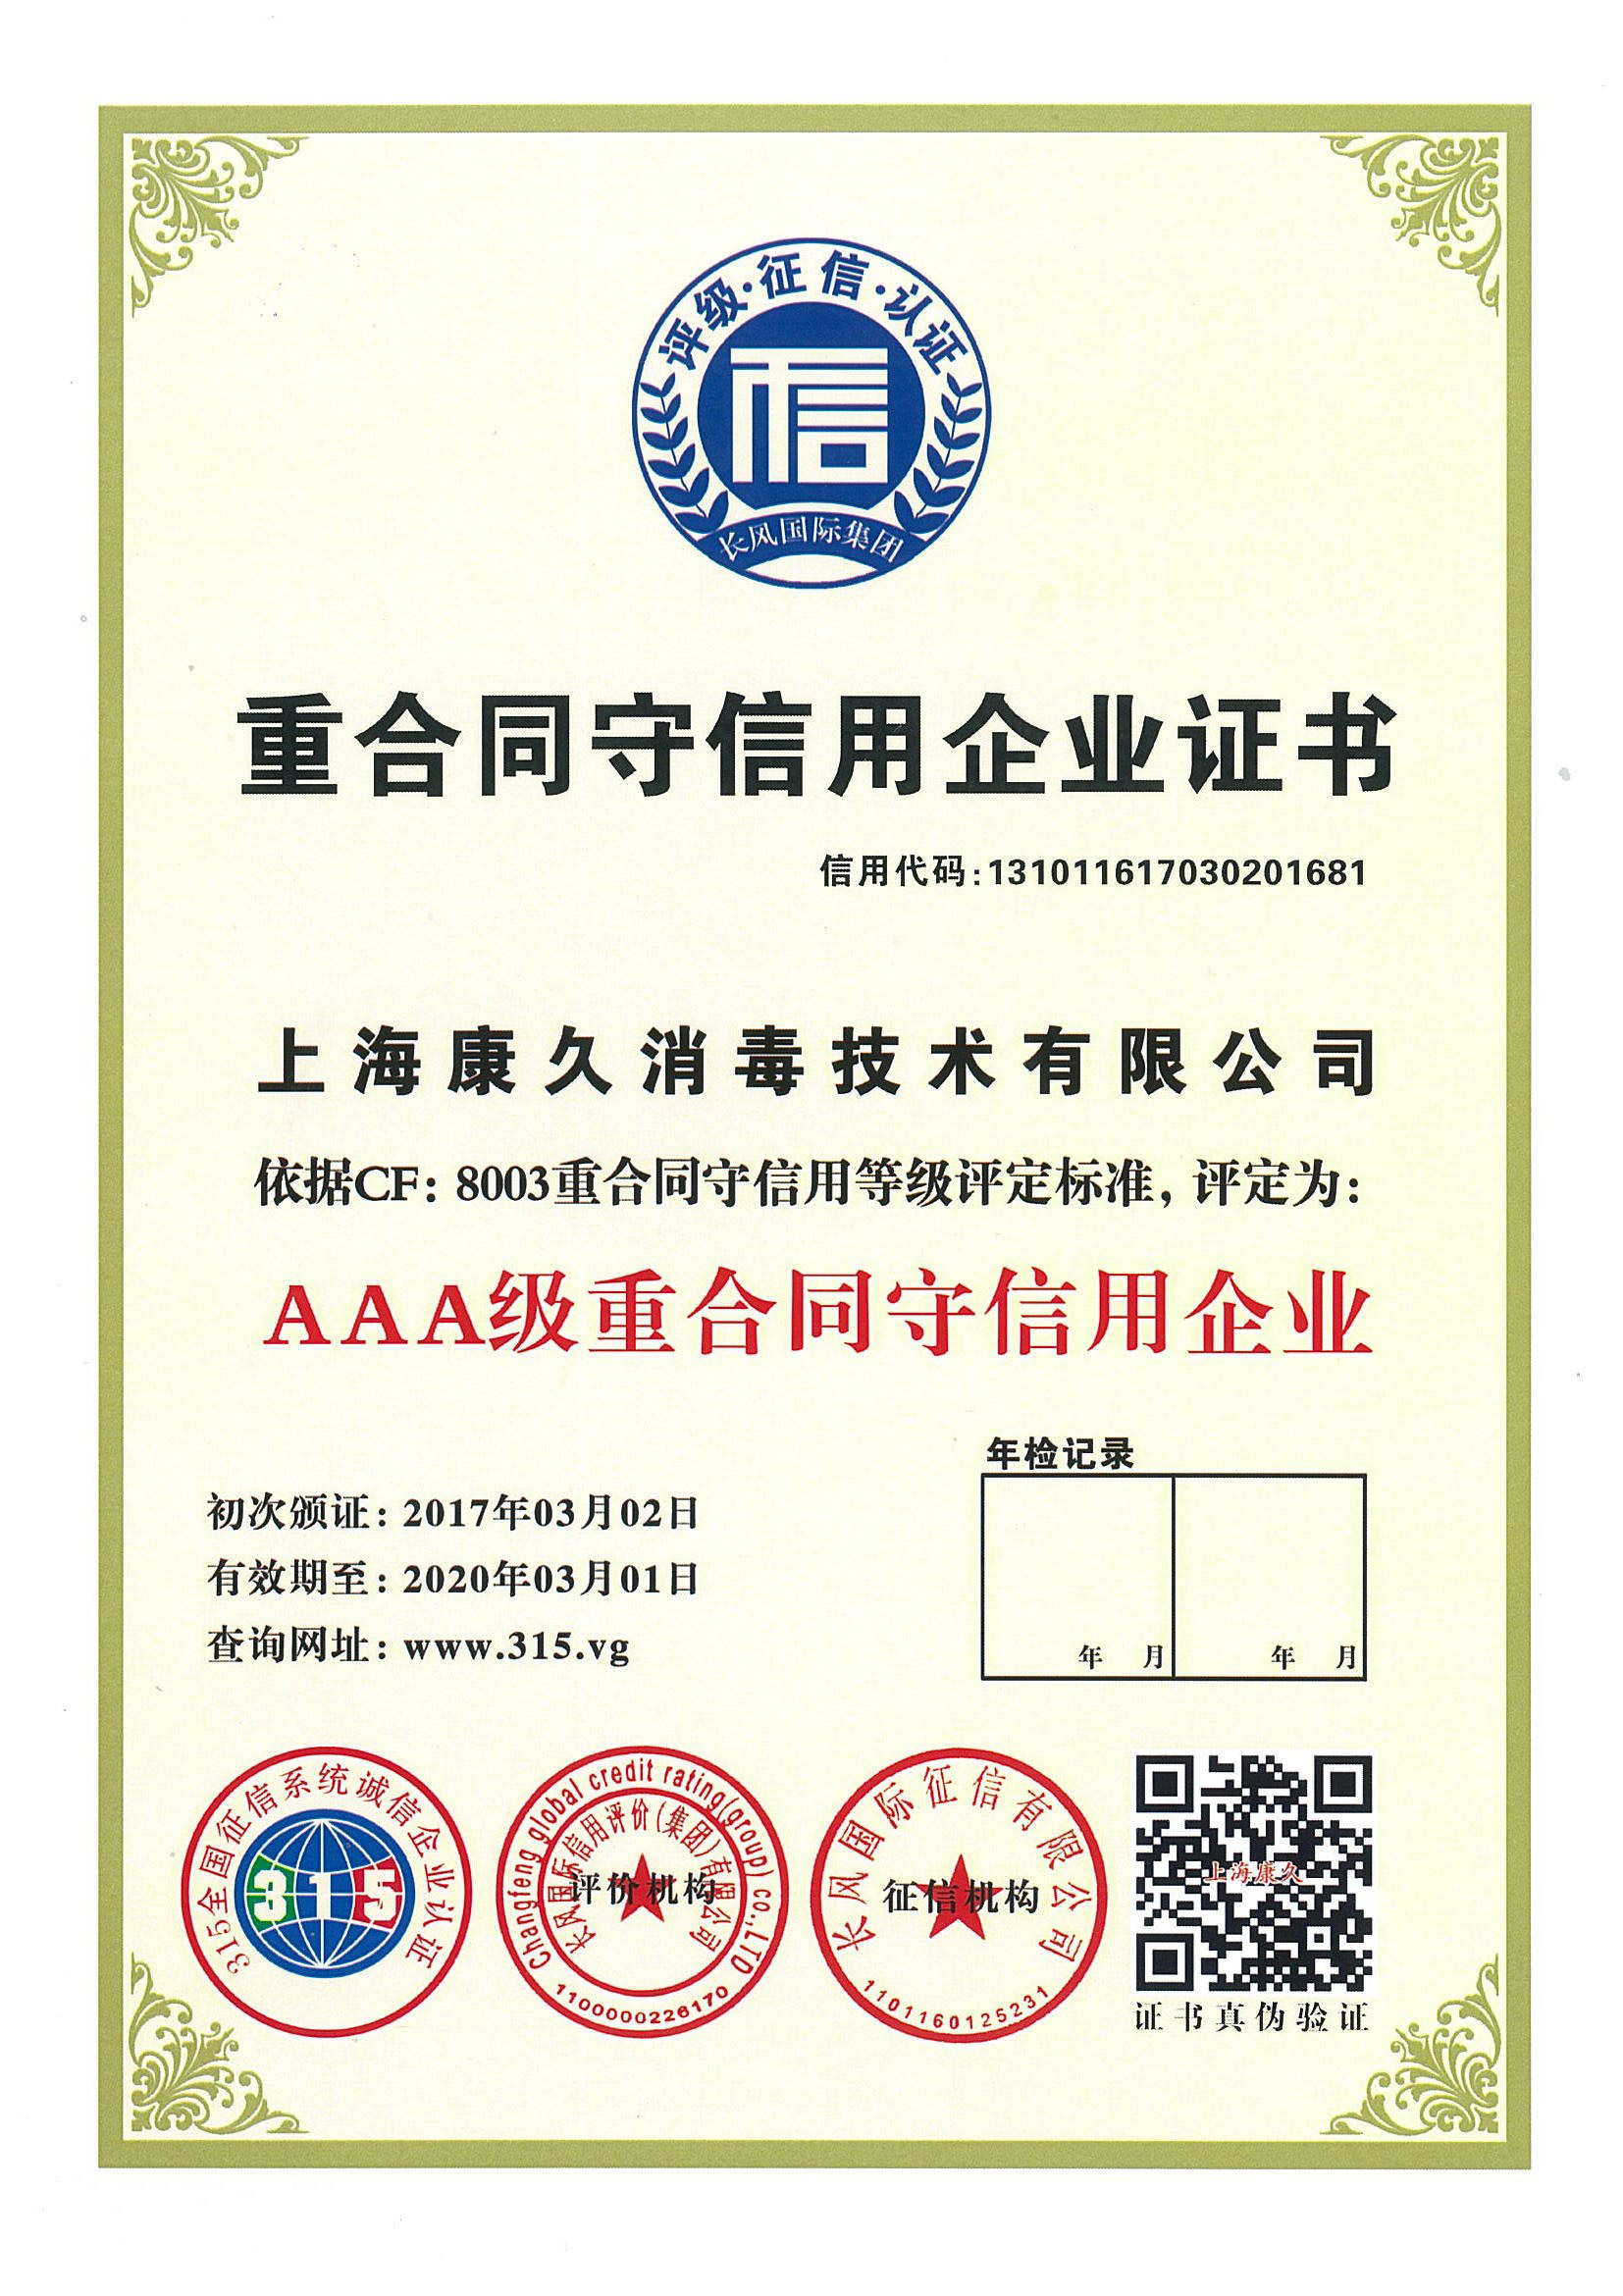 “柳州重合同守信用企业证书